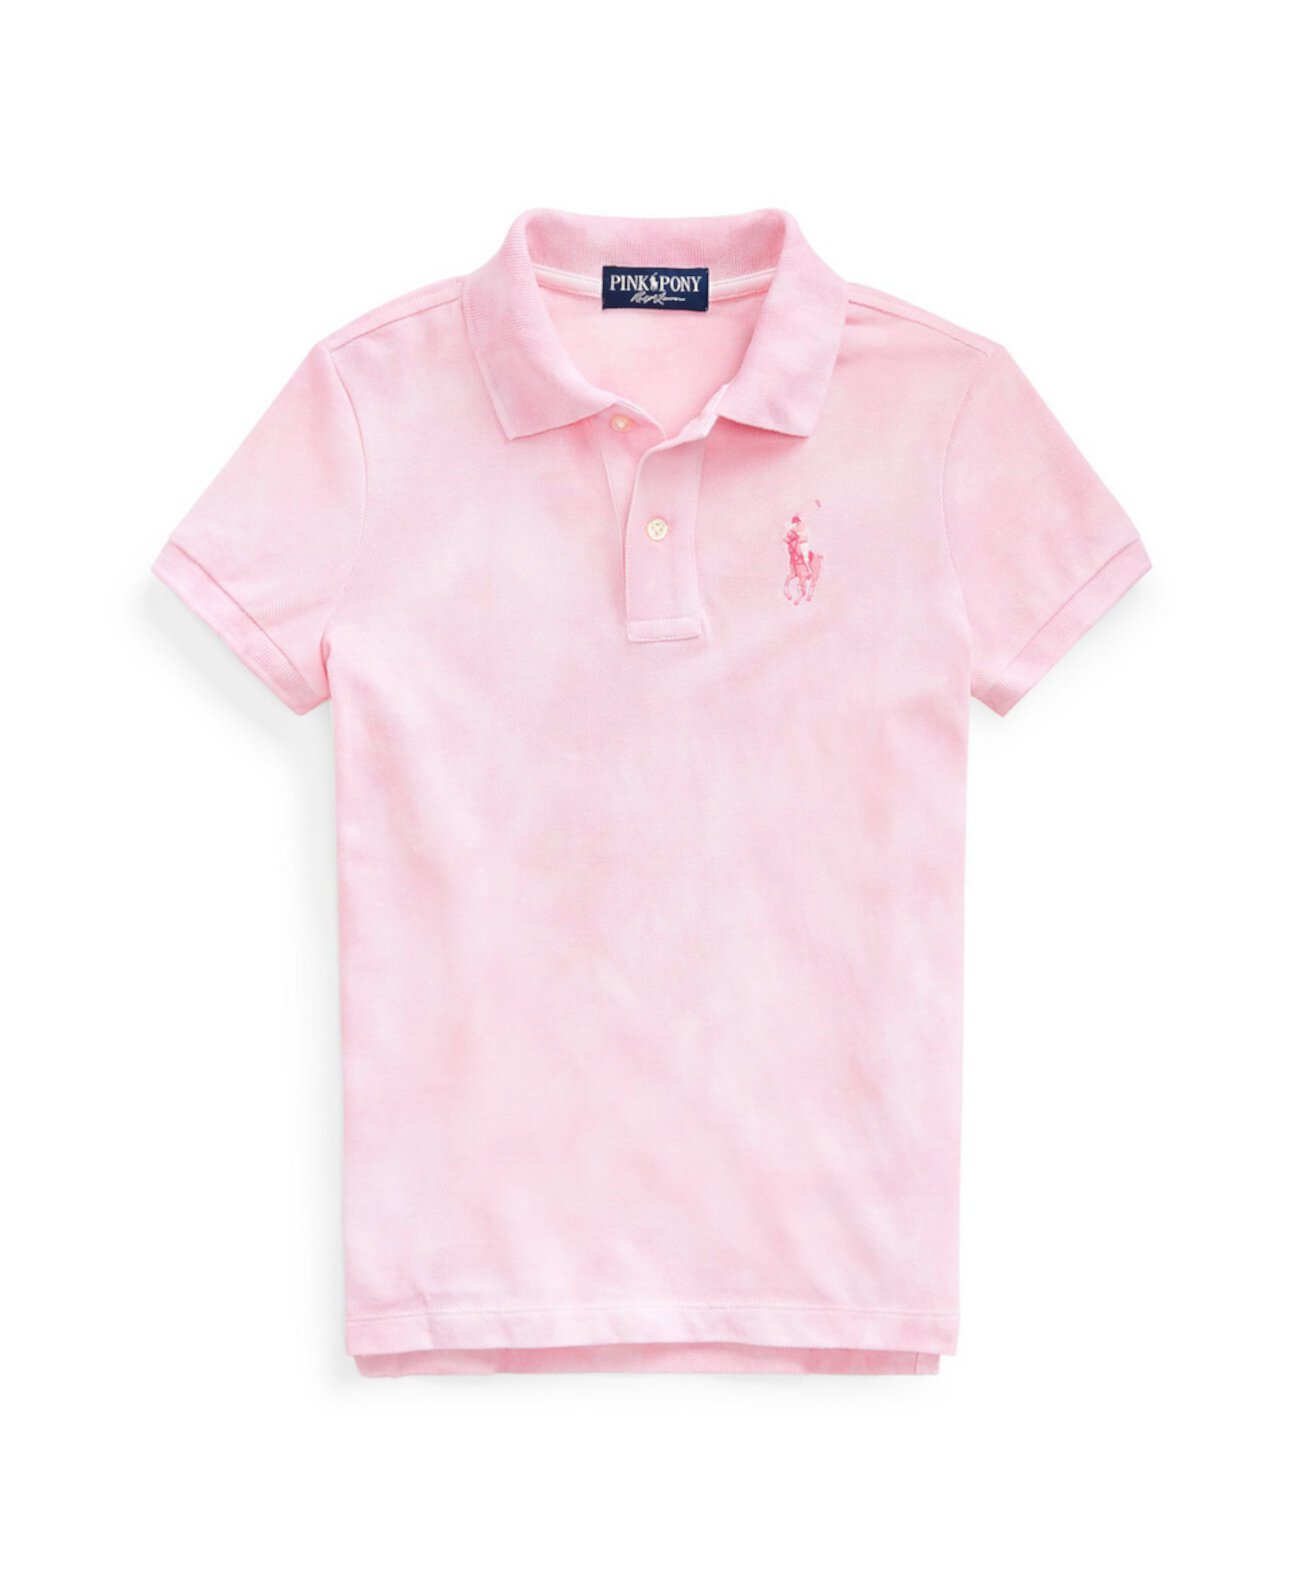 Сетчатая рубашка с принтом тай-дай Little Girls Pink Pony Ralph Lauren